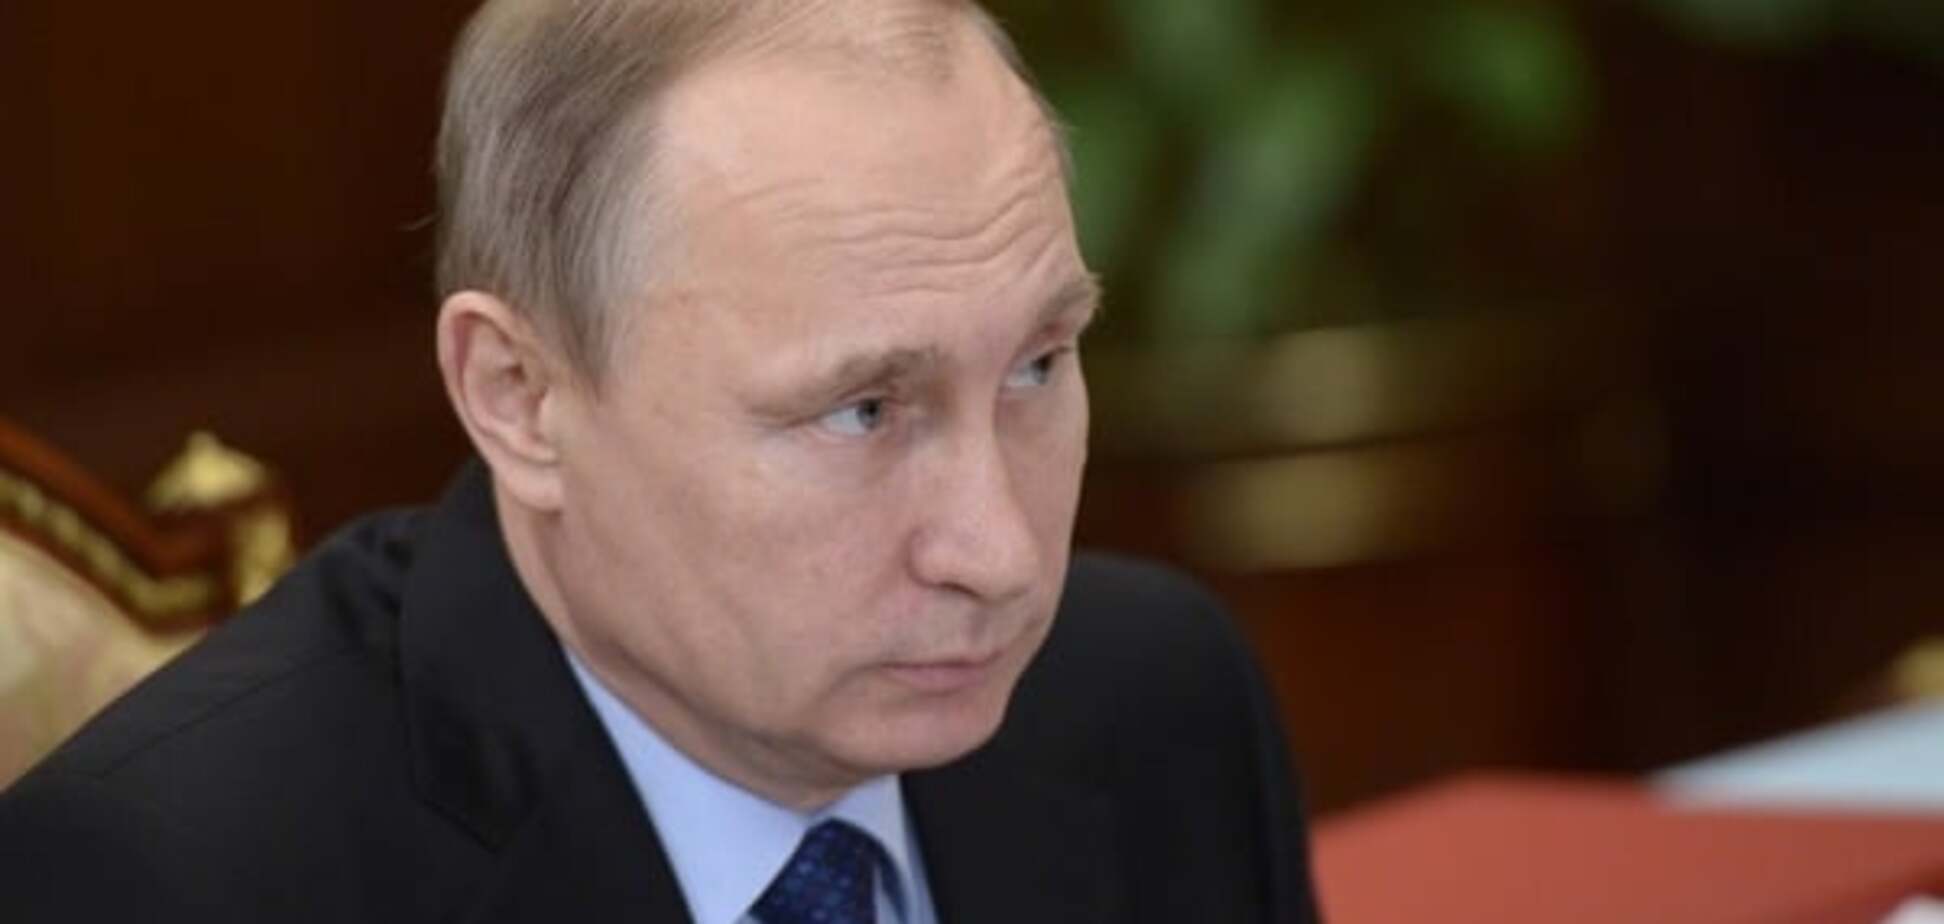 Писатель Ерофеев указал на 'бесчеловечность' в новогодней речи Путина